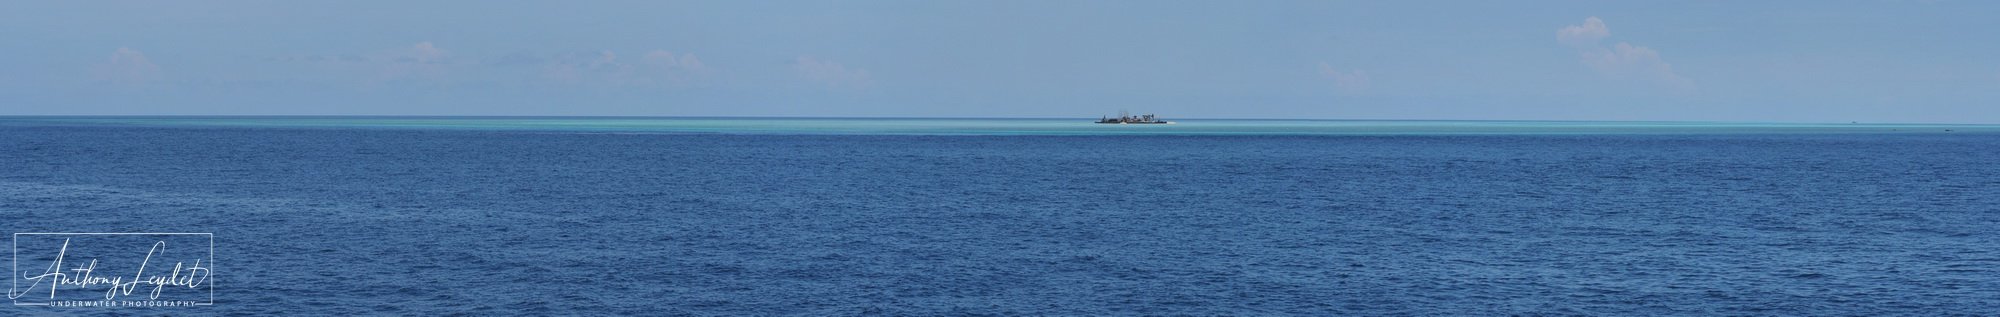 TUBBATAHA REEFS - South atoll view